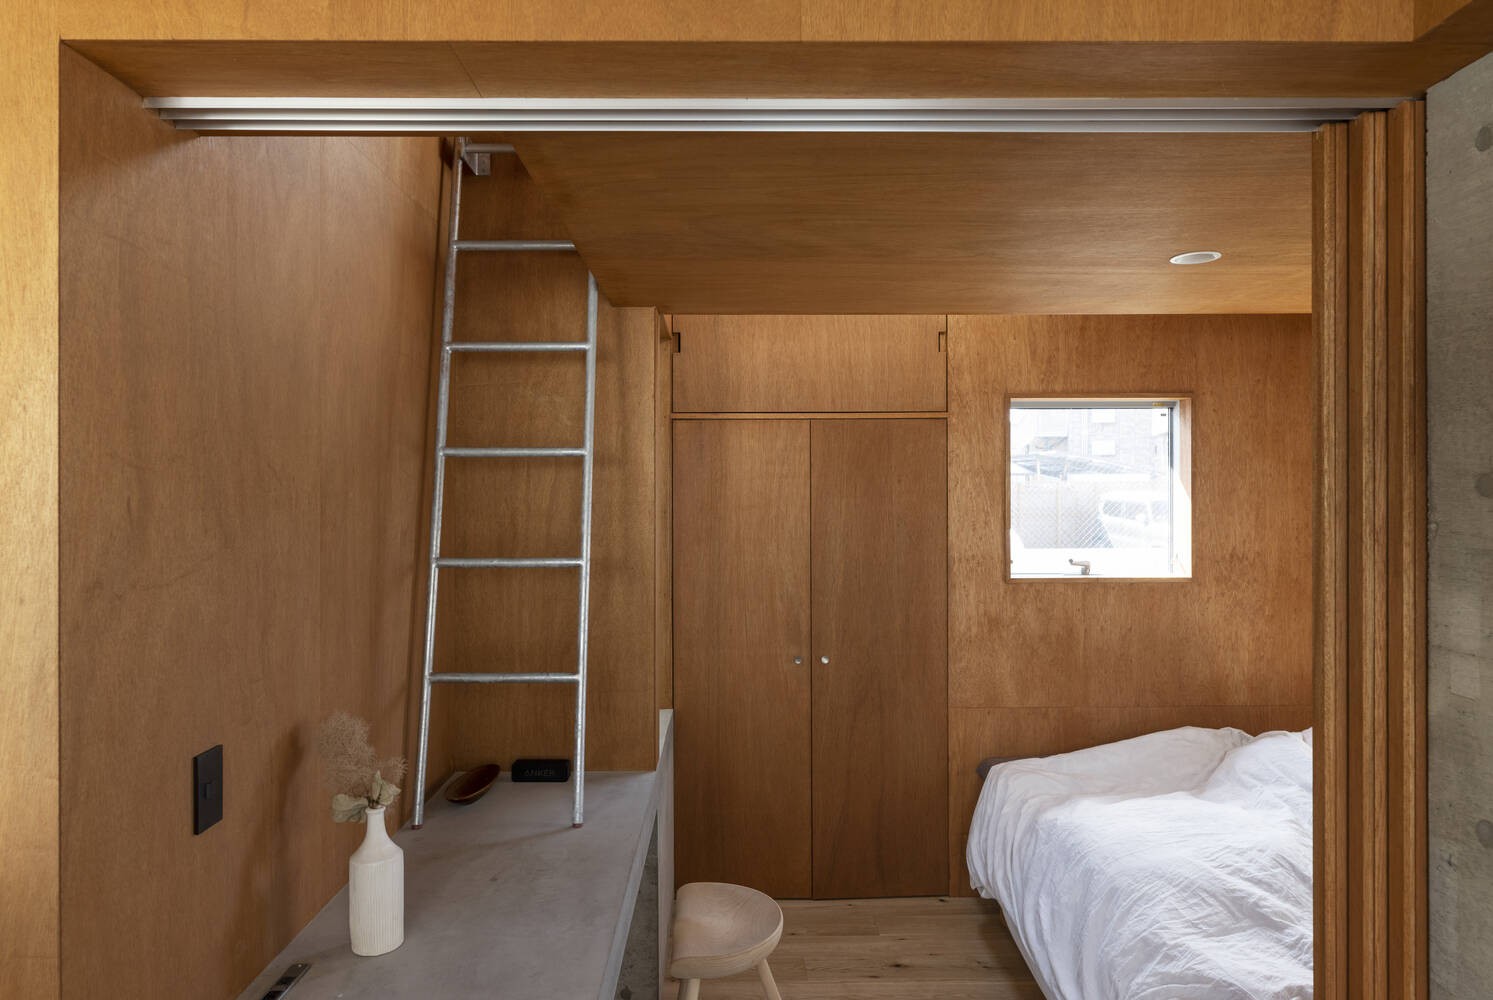 
Phòng ngủ được thiết kế theo phong cách duplex
